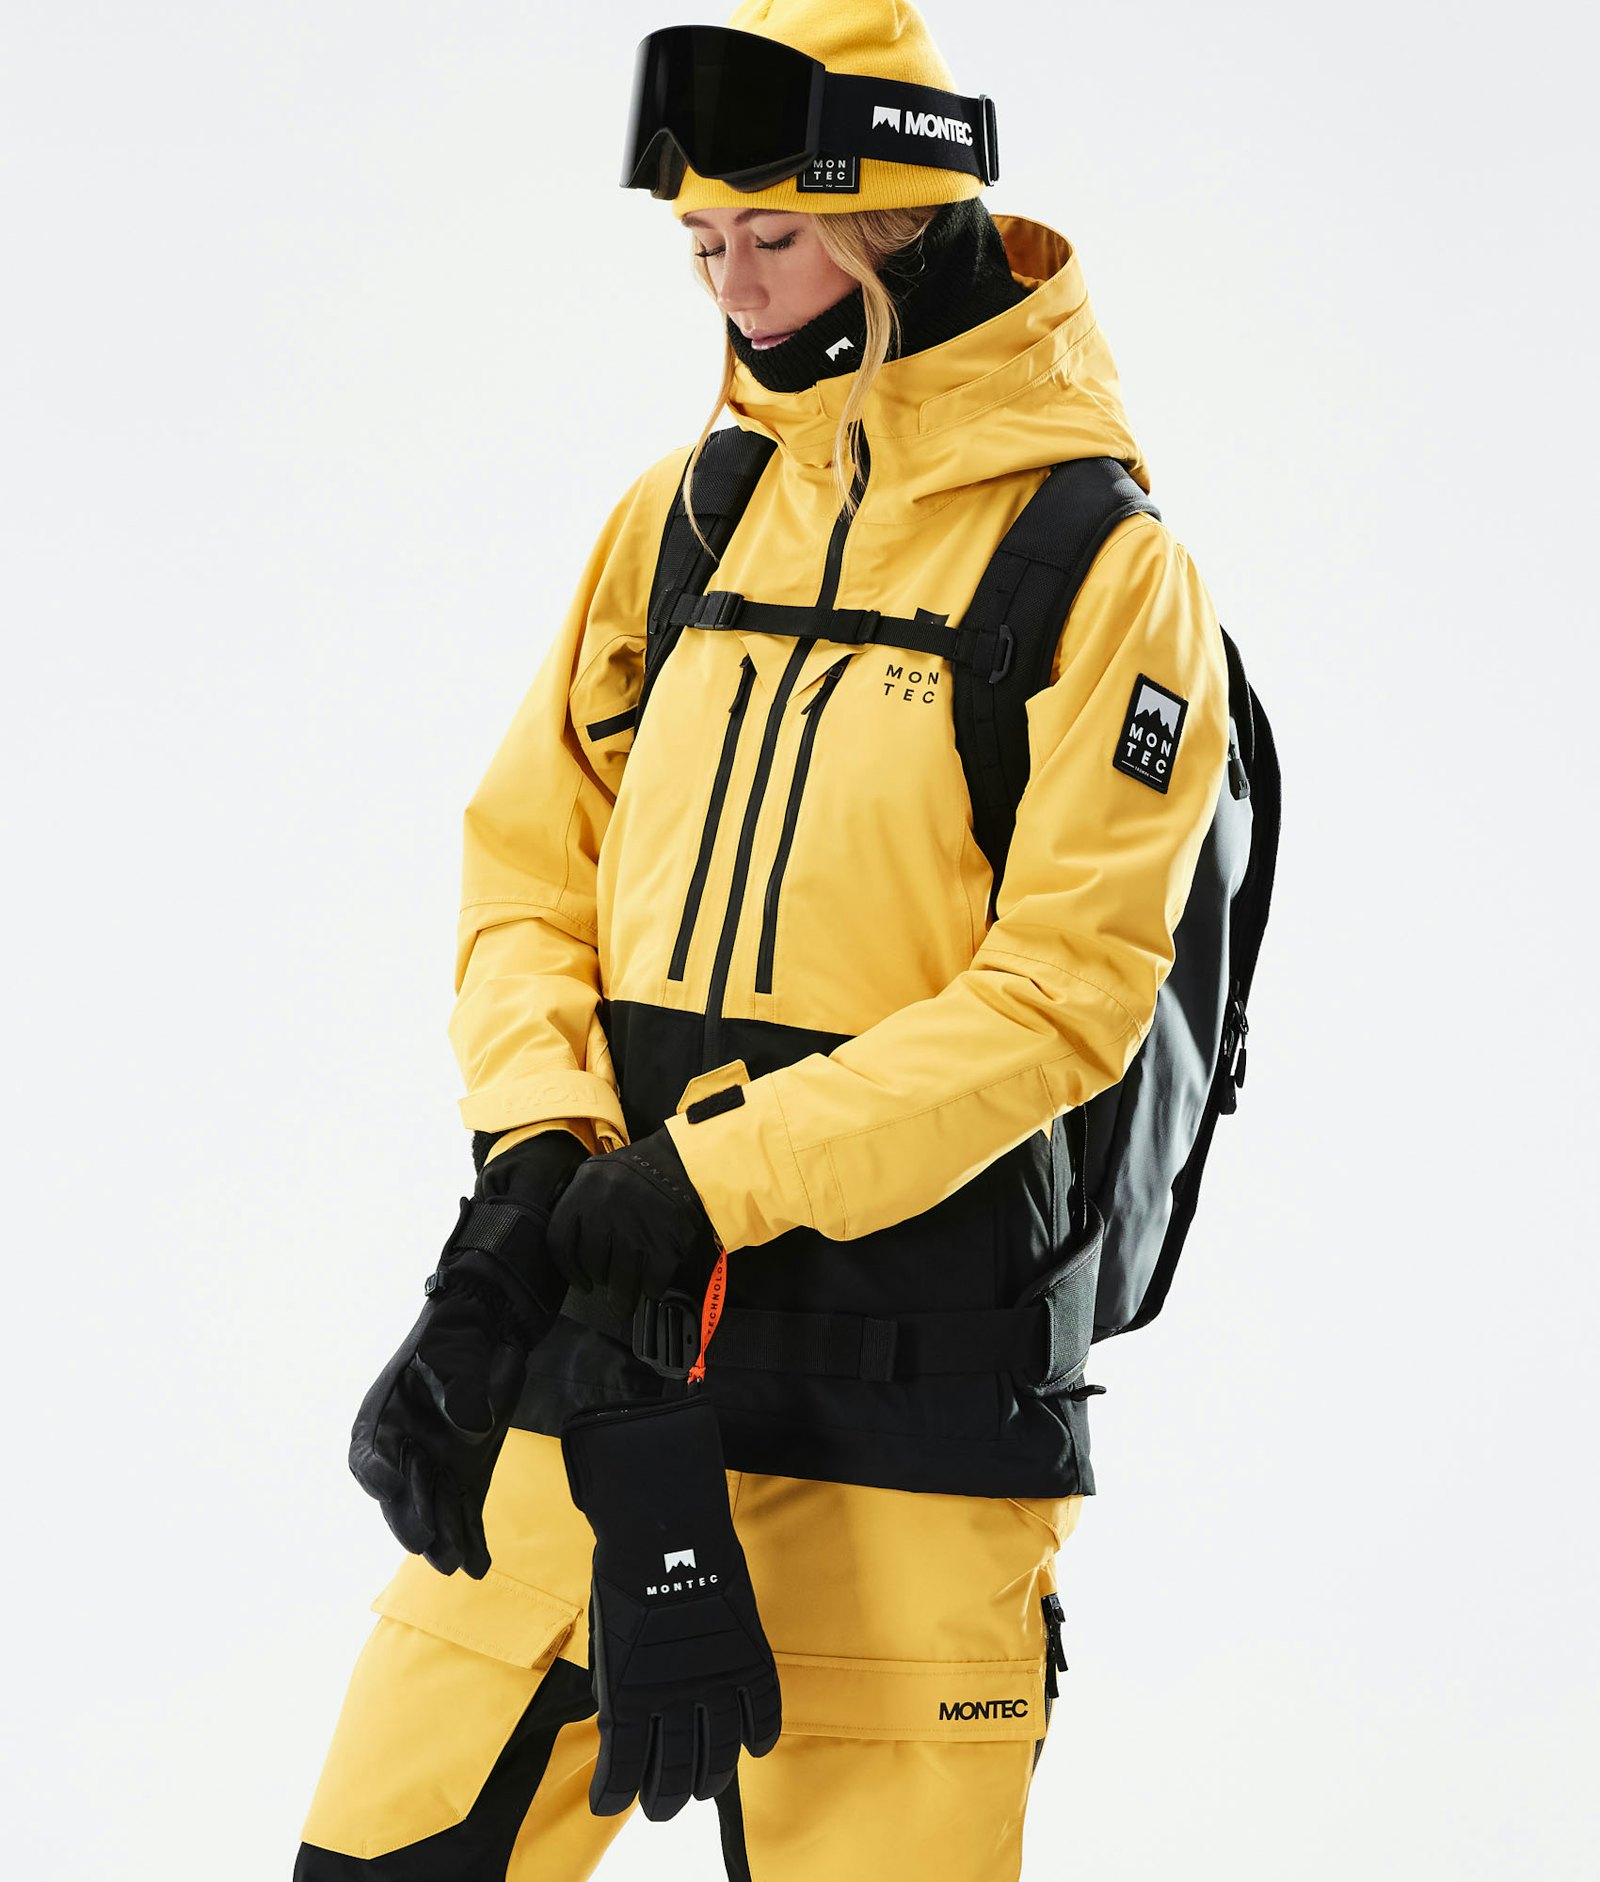 Moss W 2021 スキージャケット レディース Yellow/Black, 画像4 / 12